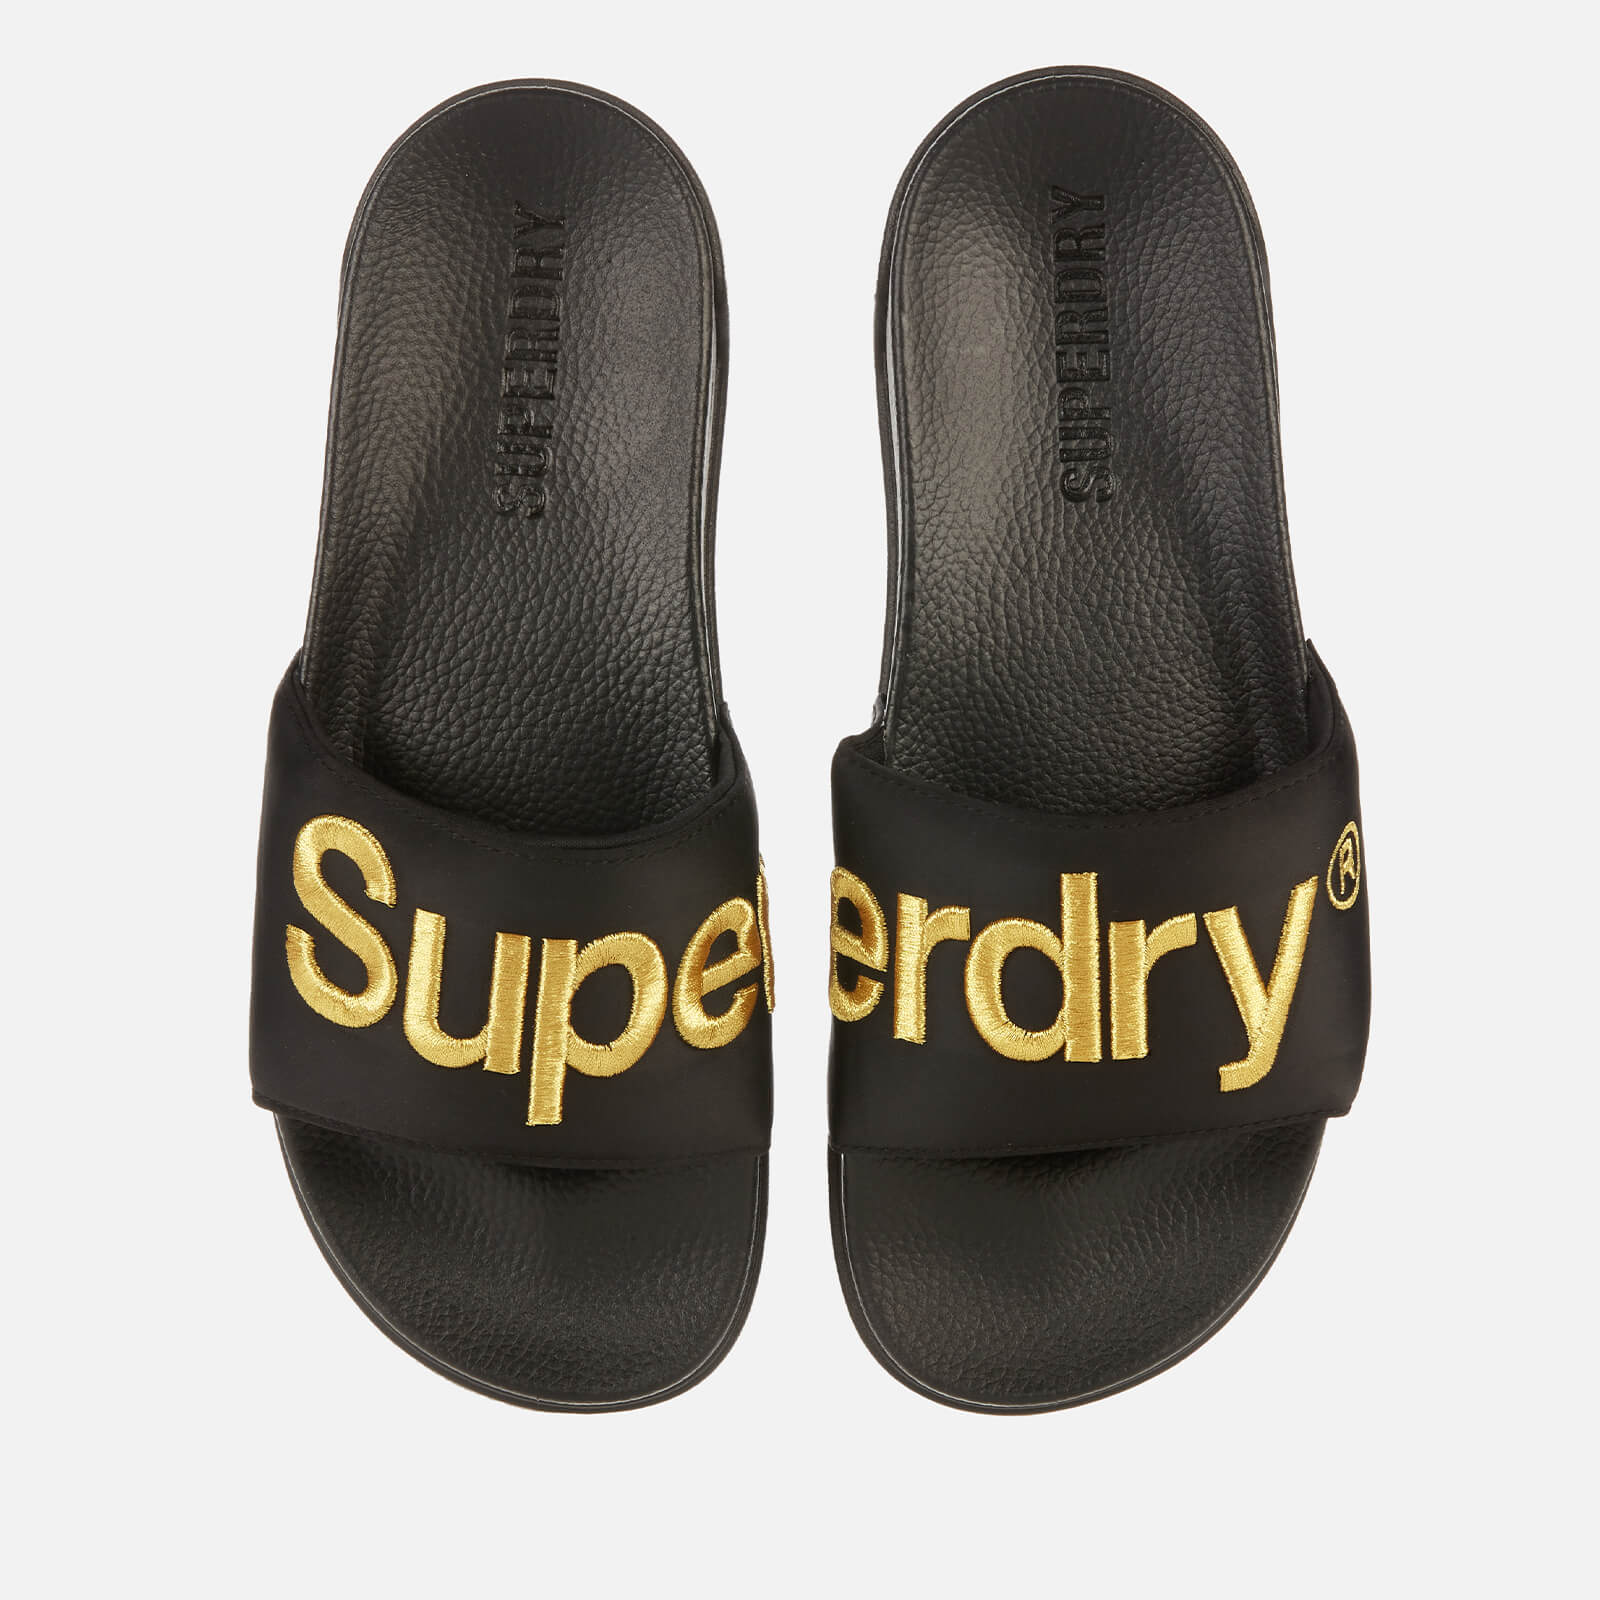 Superdry Men's Classic Scuba Slide Sandals - Black/Gold - S